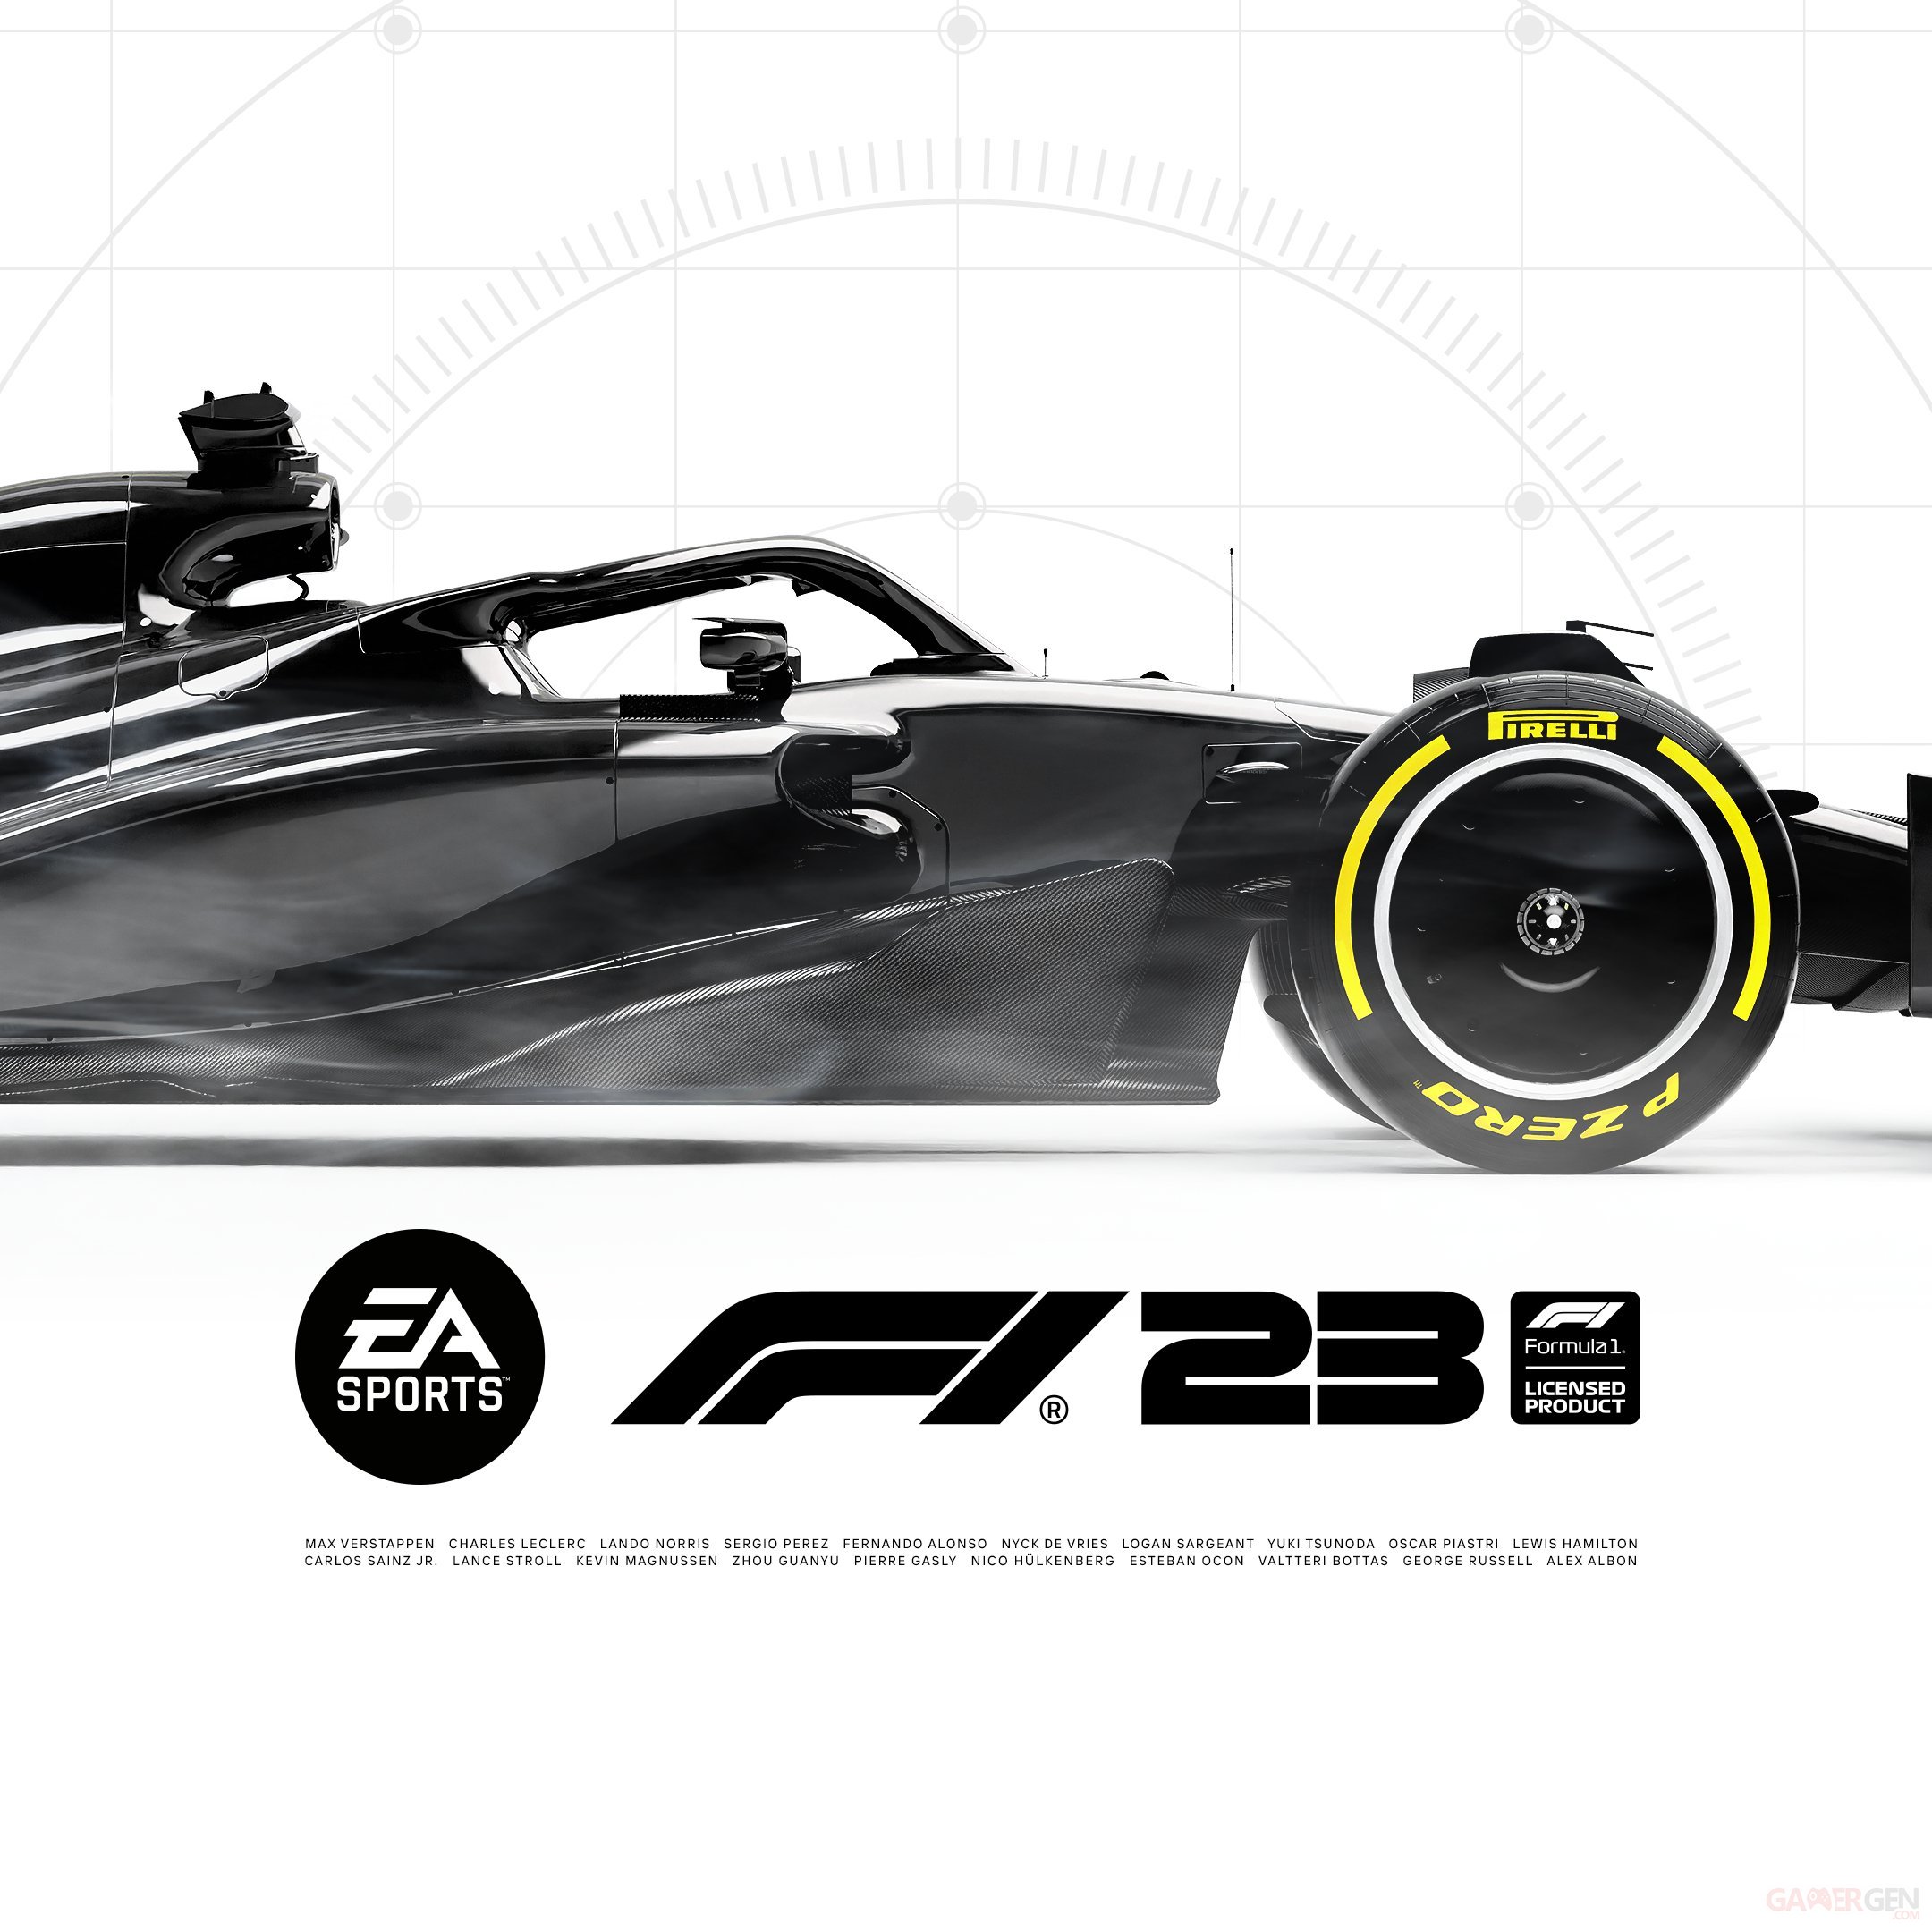 F1 23 sobrement officialisé avec un premier visuel 